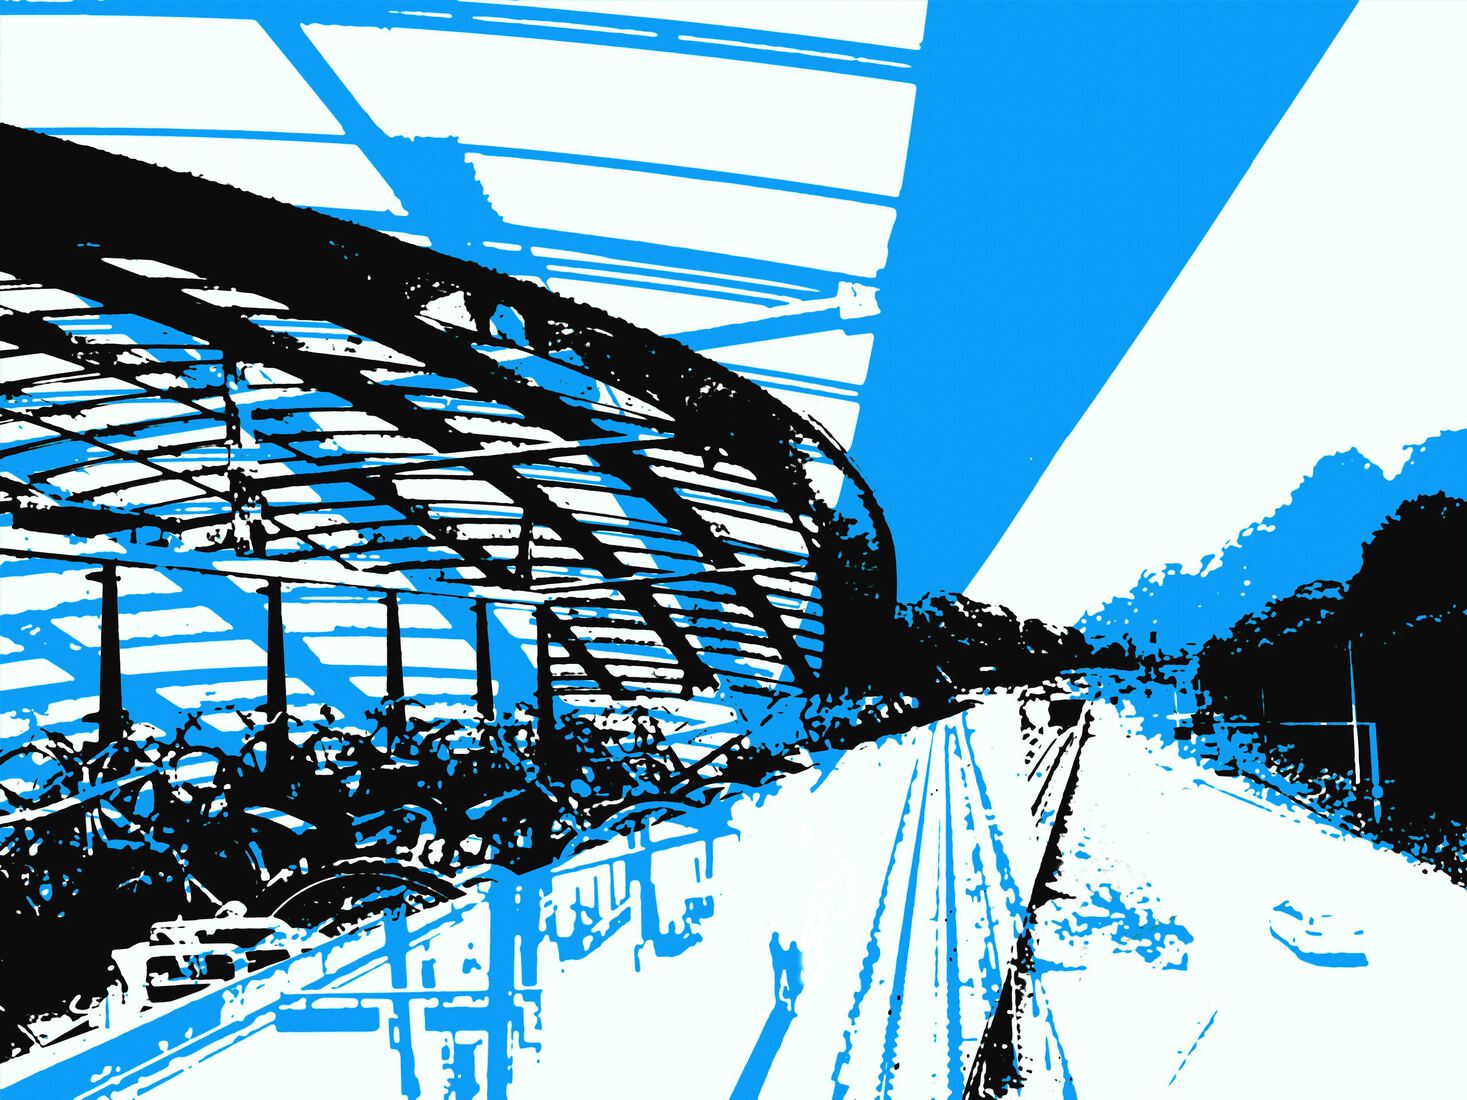 Metrostation Noorderpark Amsterdam-Noord 4,- digitale art print